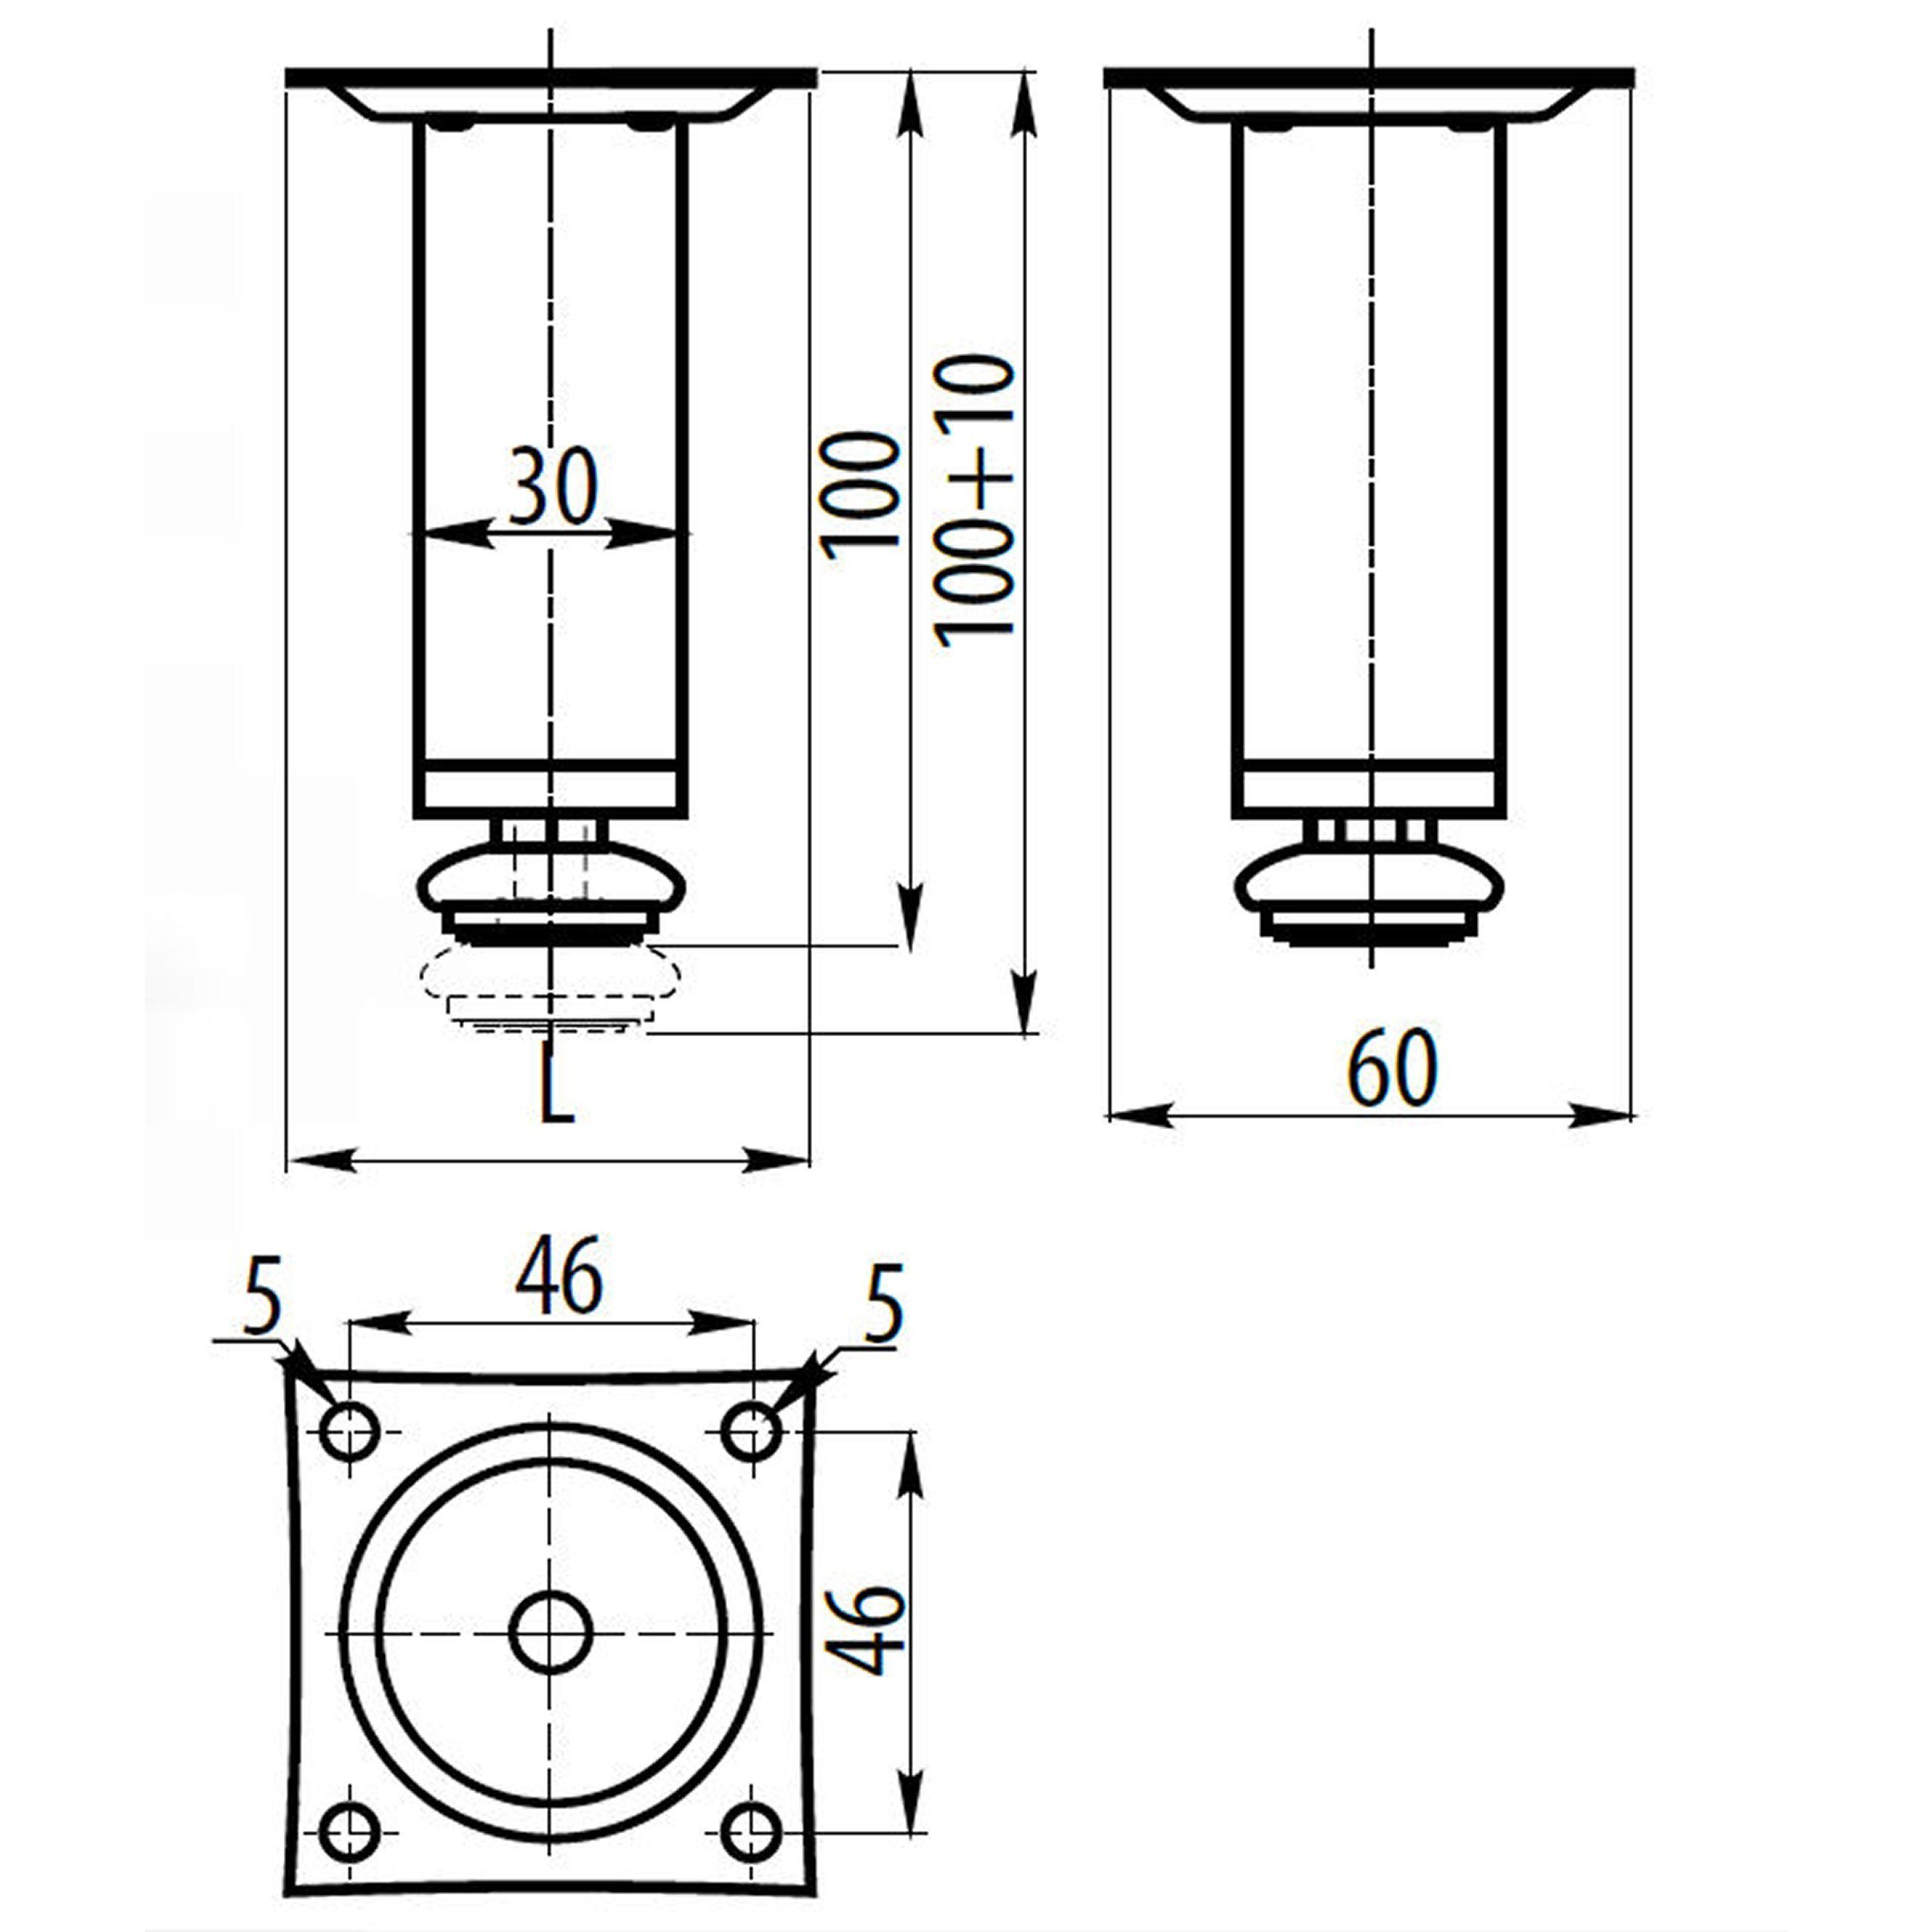 SO-TECH® Möbelfuß Möbelfuß mit 30 mm Ø 100-150 Höhenverstellung mm Höhe